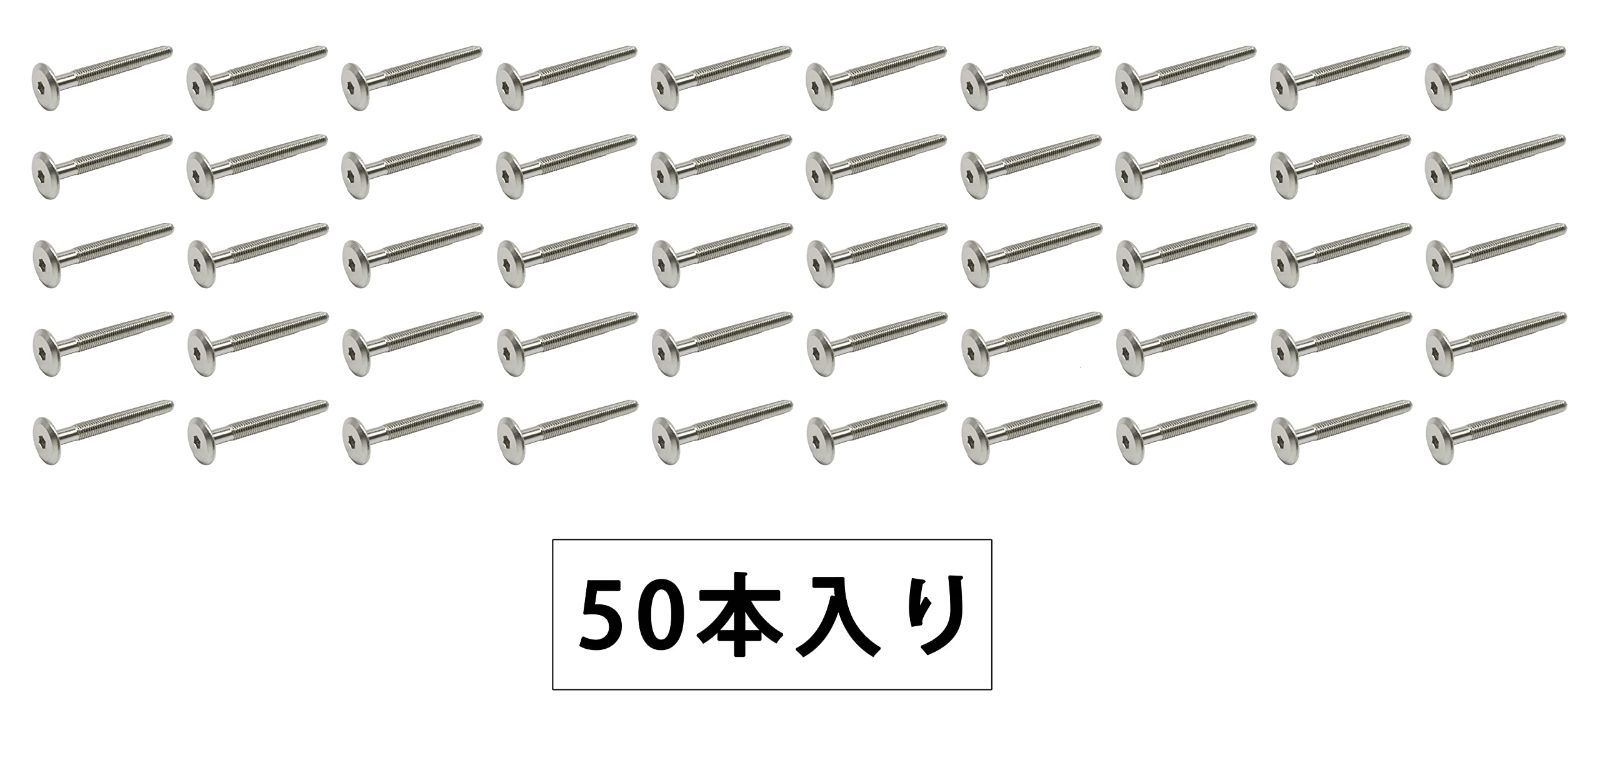 ホーケングローブ No.6 皮手袋 Lサイズ 10双組 (No.6 吟皮当・黒) - 1